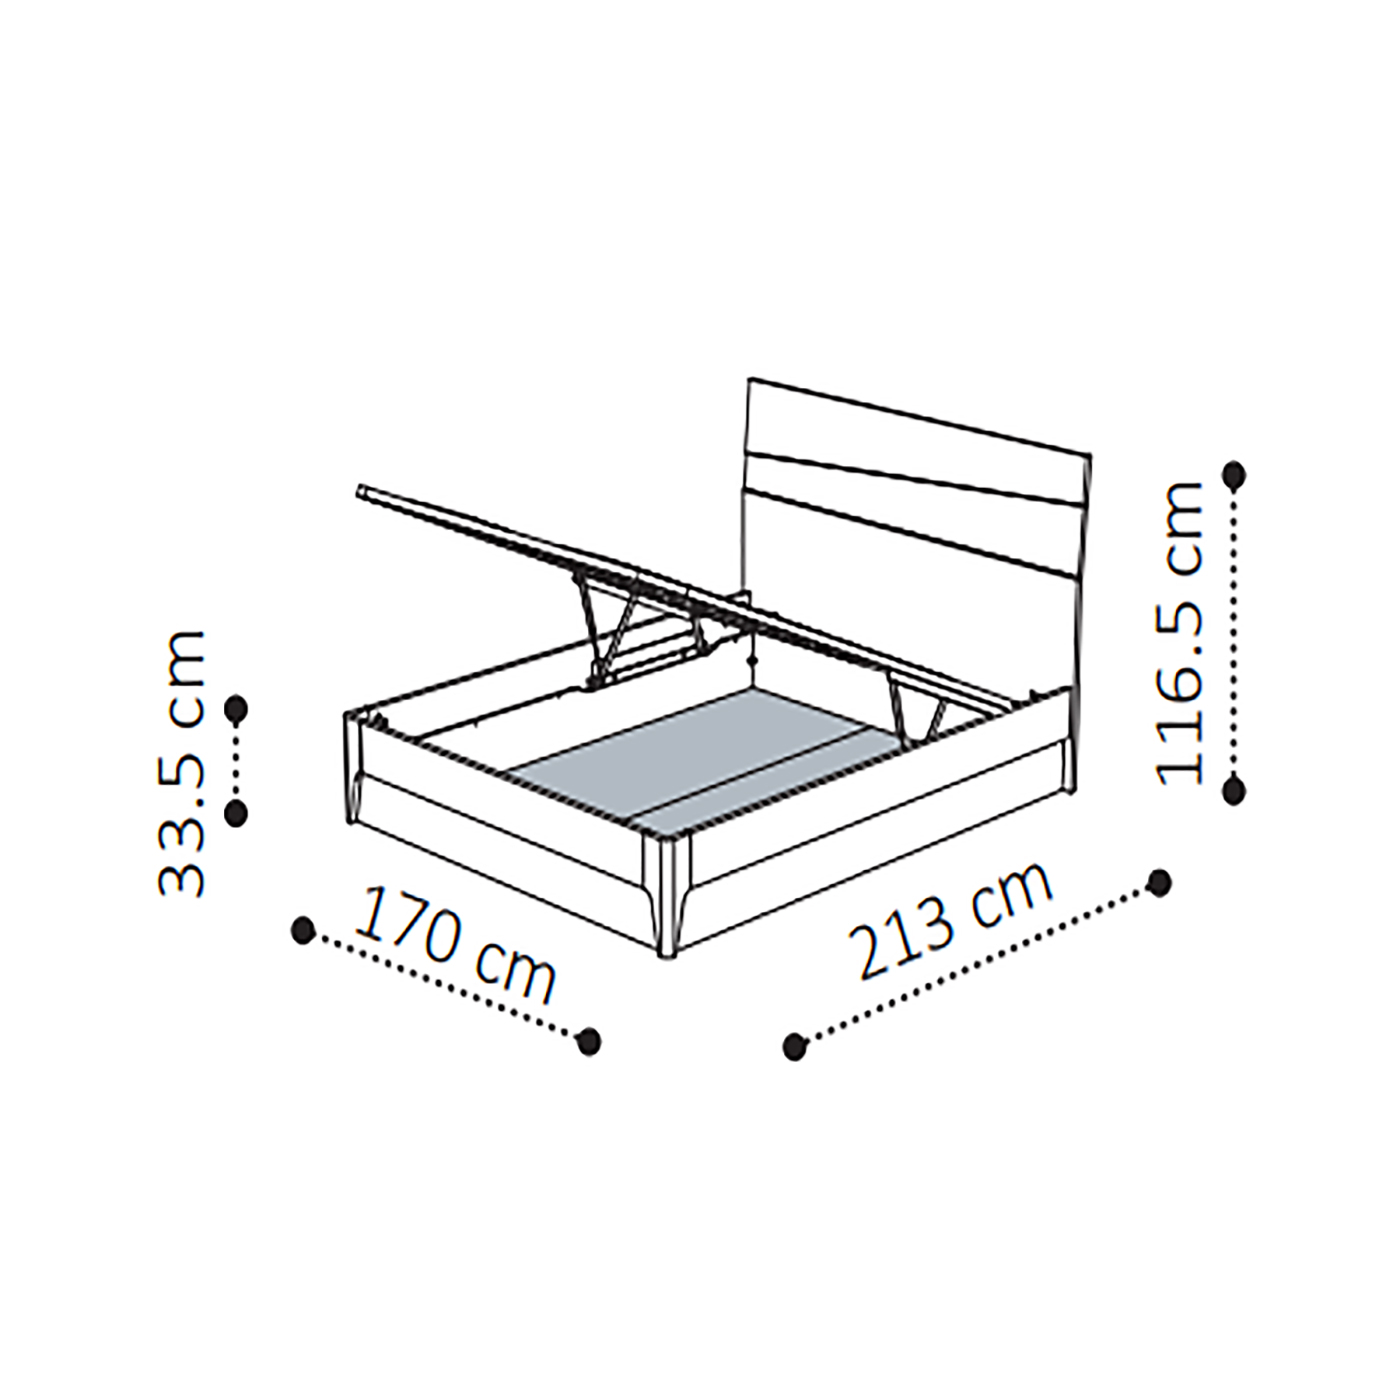 Кровать Camelgroup Tekno, с подъемным механизмом, цвет: серебристая береза, 160x200 см (156LET.03PL)156LET.03PL